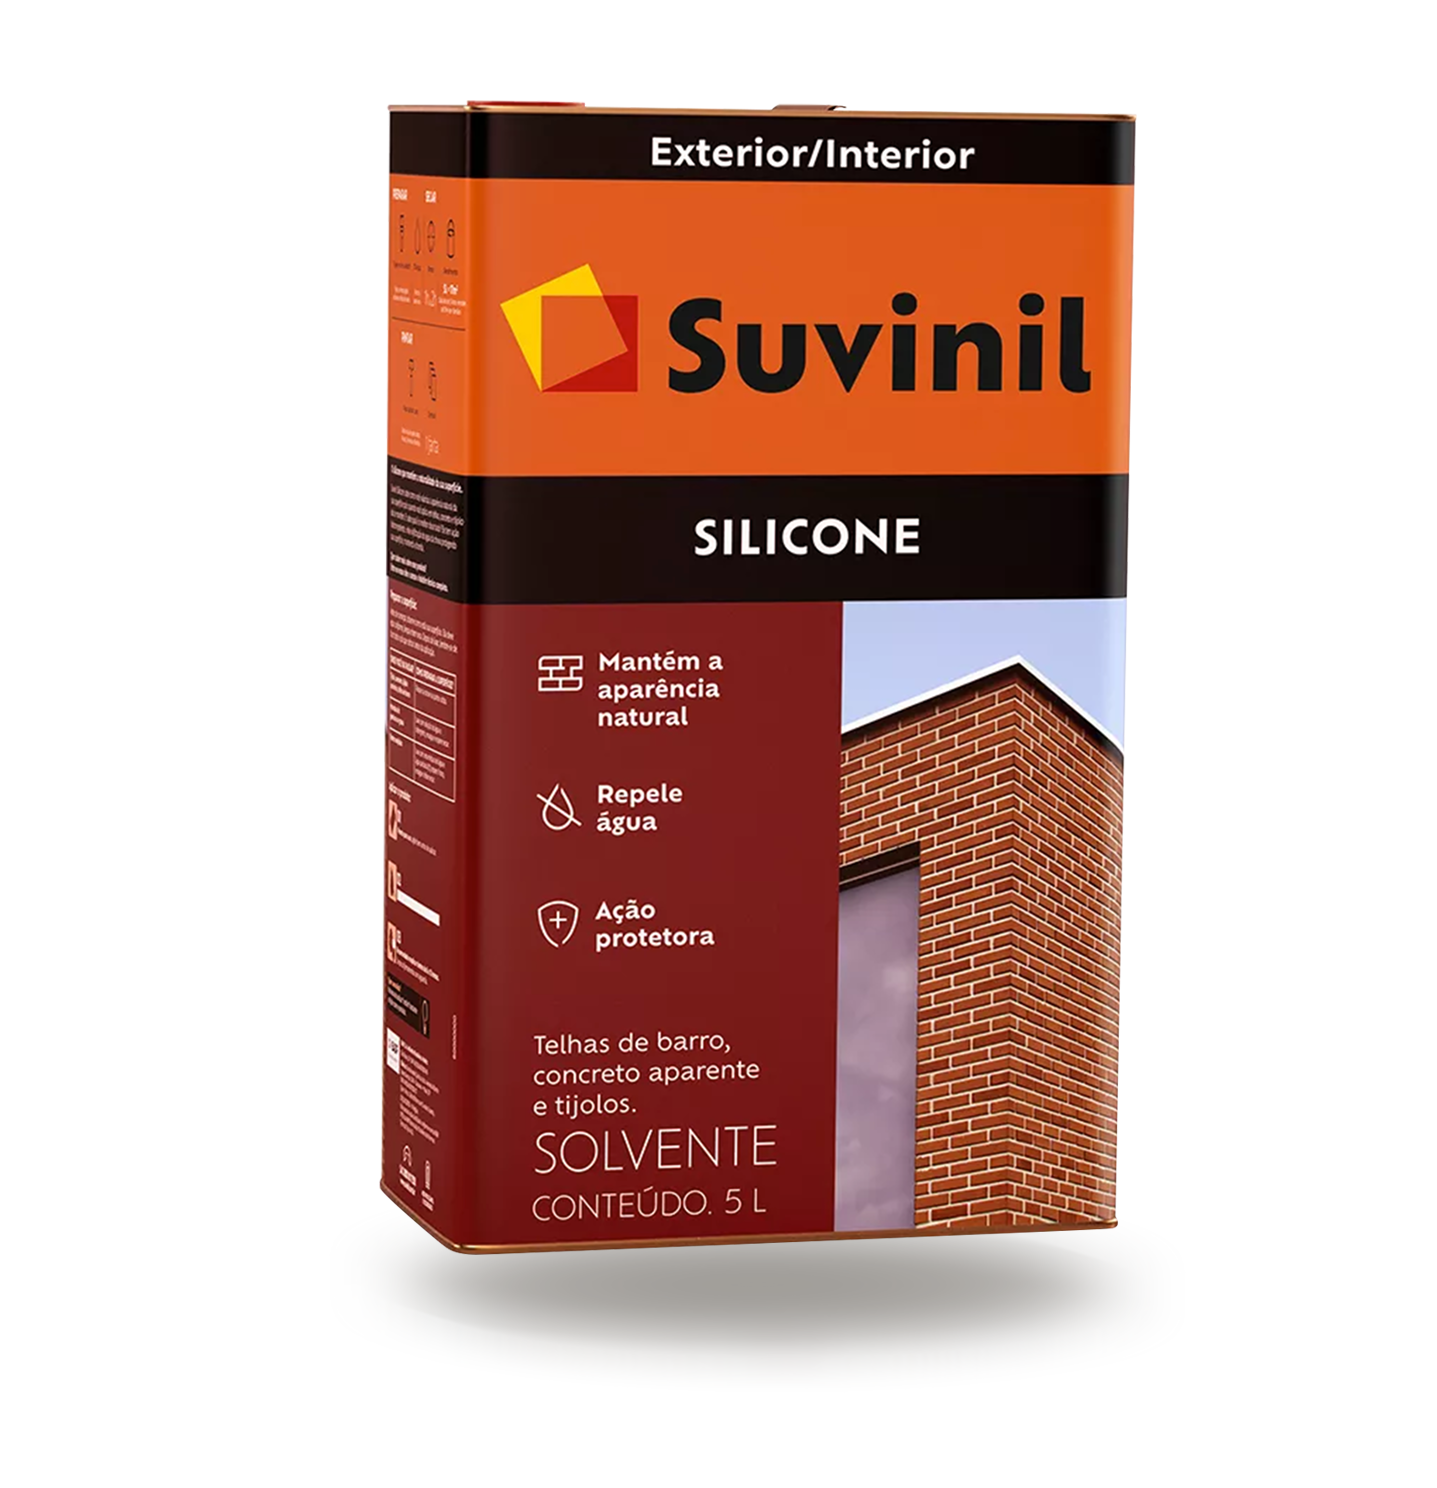 Suvinil - Silicone - Solvente